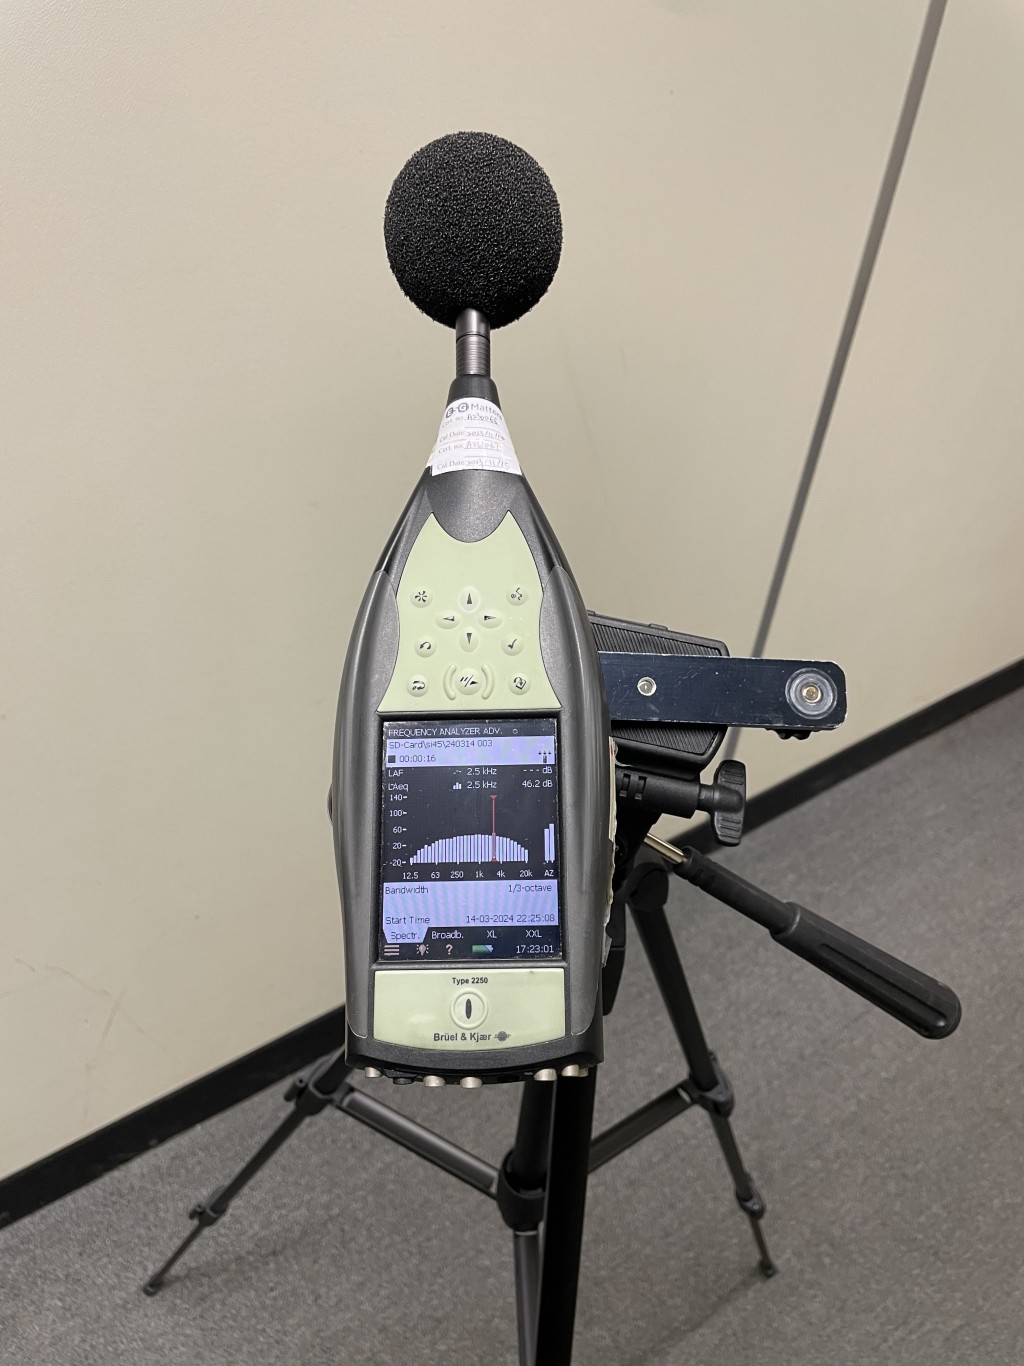 声学相机显示涉事高频噪音与用声级计就该噪音录得的峰值频率吻合，确认声学相机显示的屋苑位置是该噪音源头。